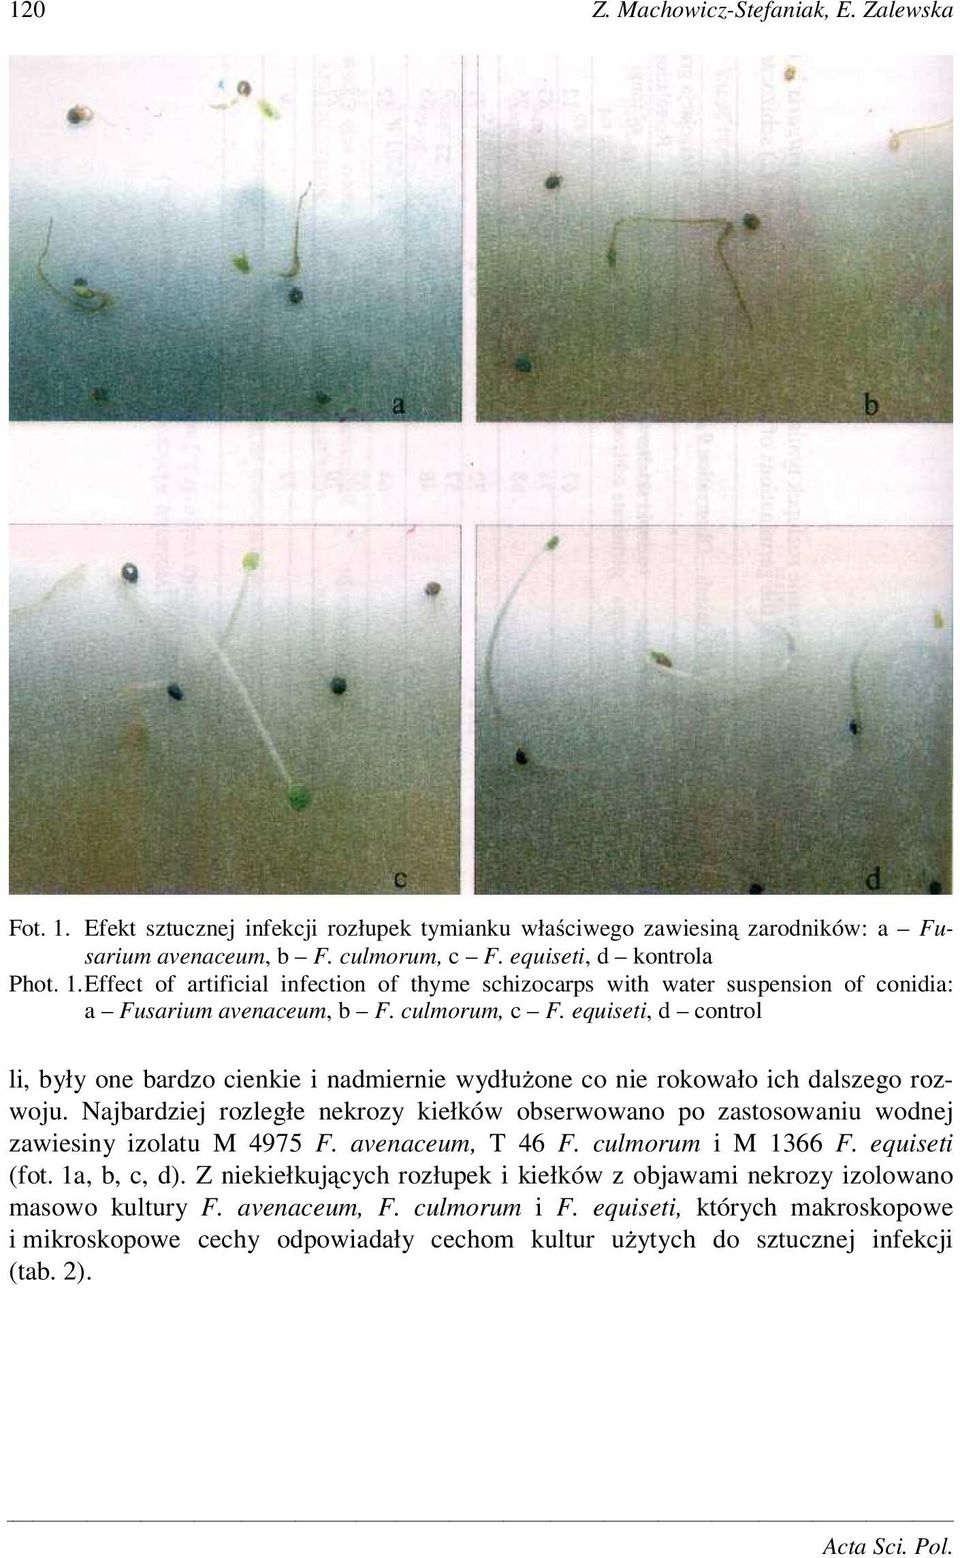 Najbardziej rozległe nekrozy kiełków obserwowano po zastosowaniu wodnej zawiesiny izolatu M 4975 F. avenaceum, T 46 F. culmorum i M 1366 F. equiseti (fot. 1a, b, c, d).